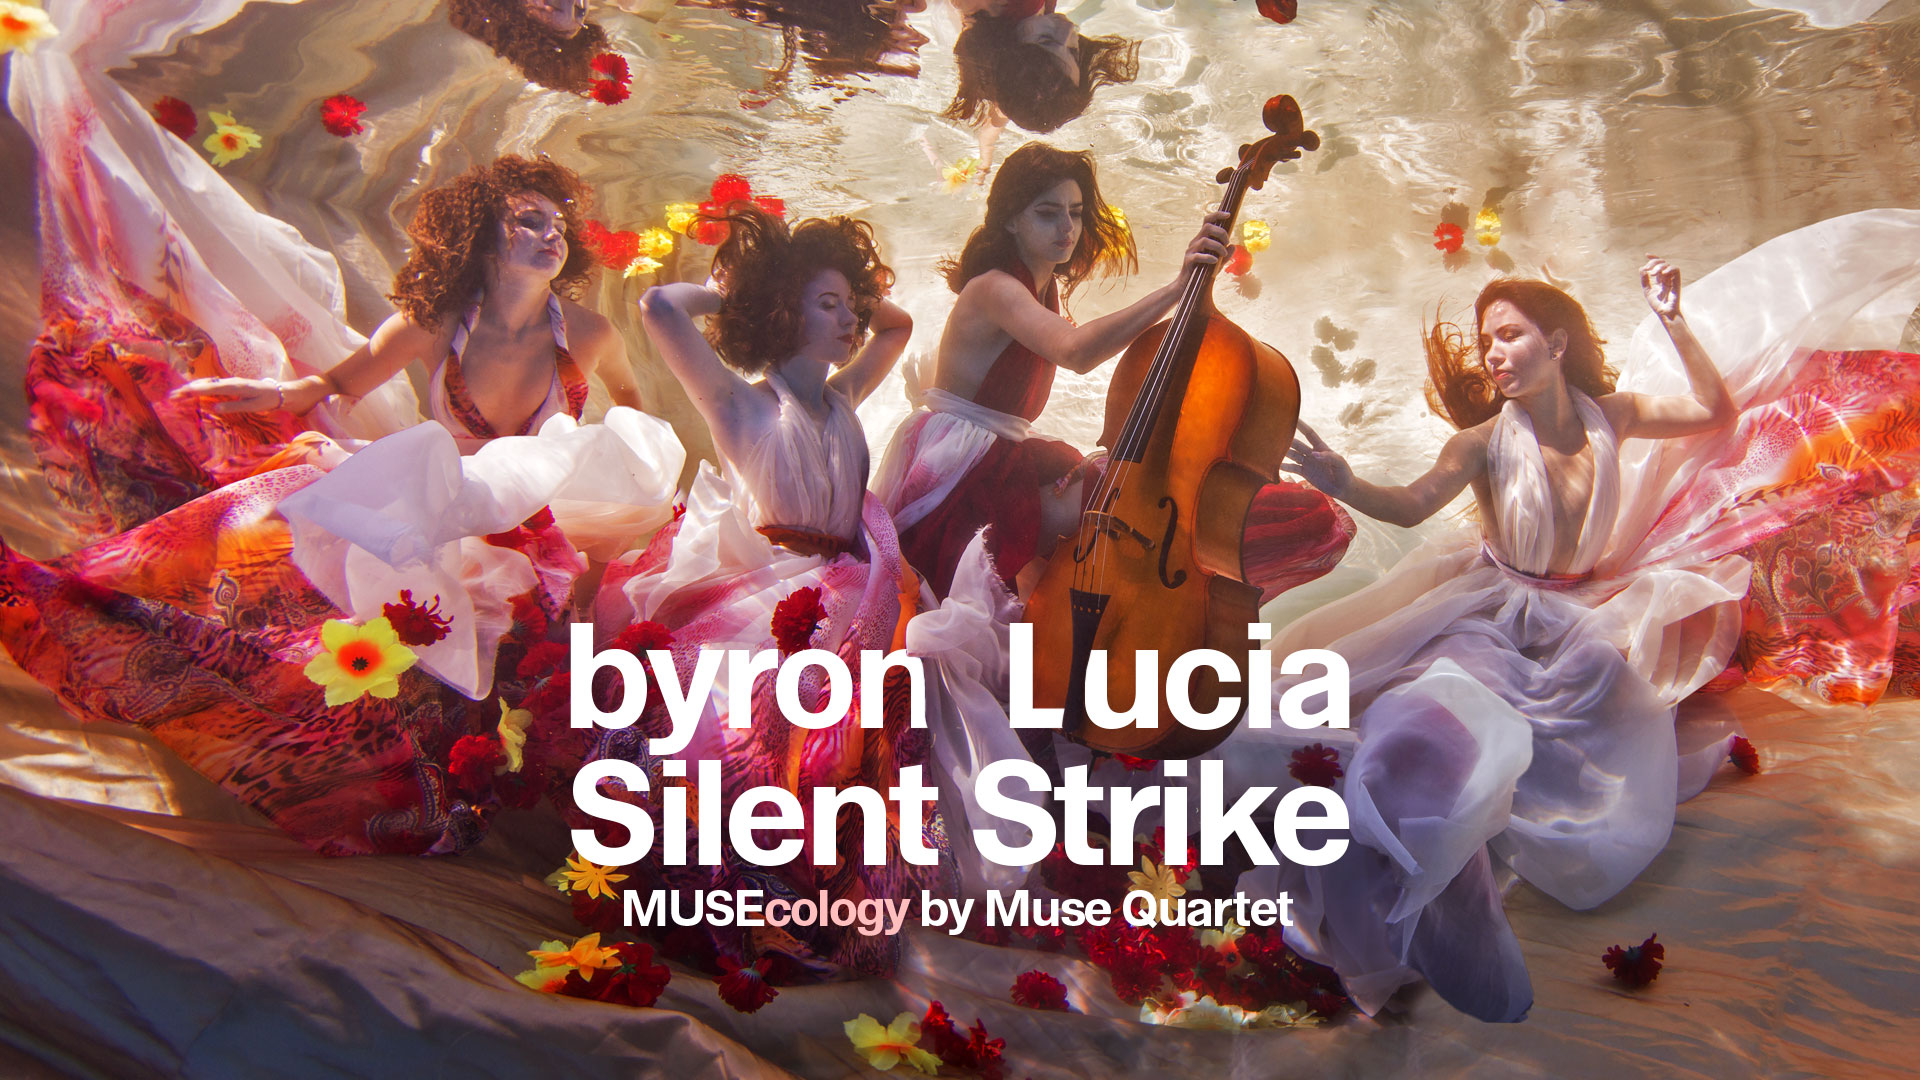 byron, Lucia și Silent Strike, acompaniați de Muse Quartet în același spectacol, la Cluj-Napoca